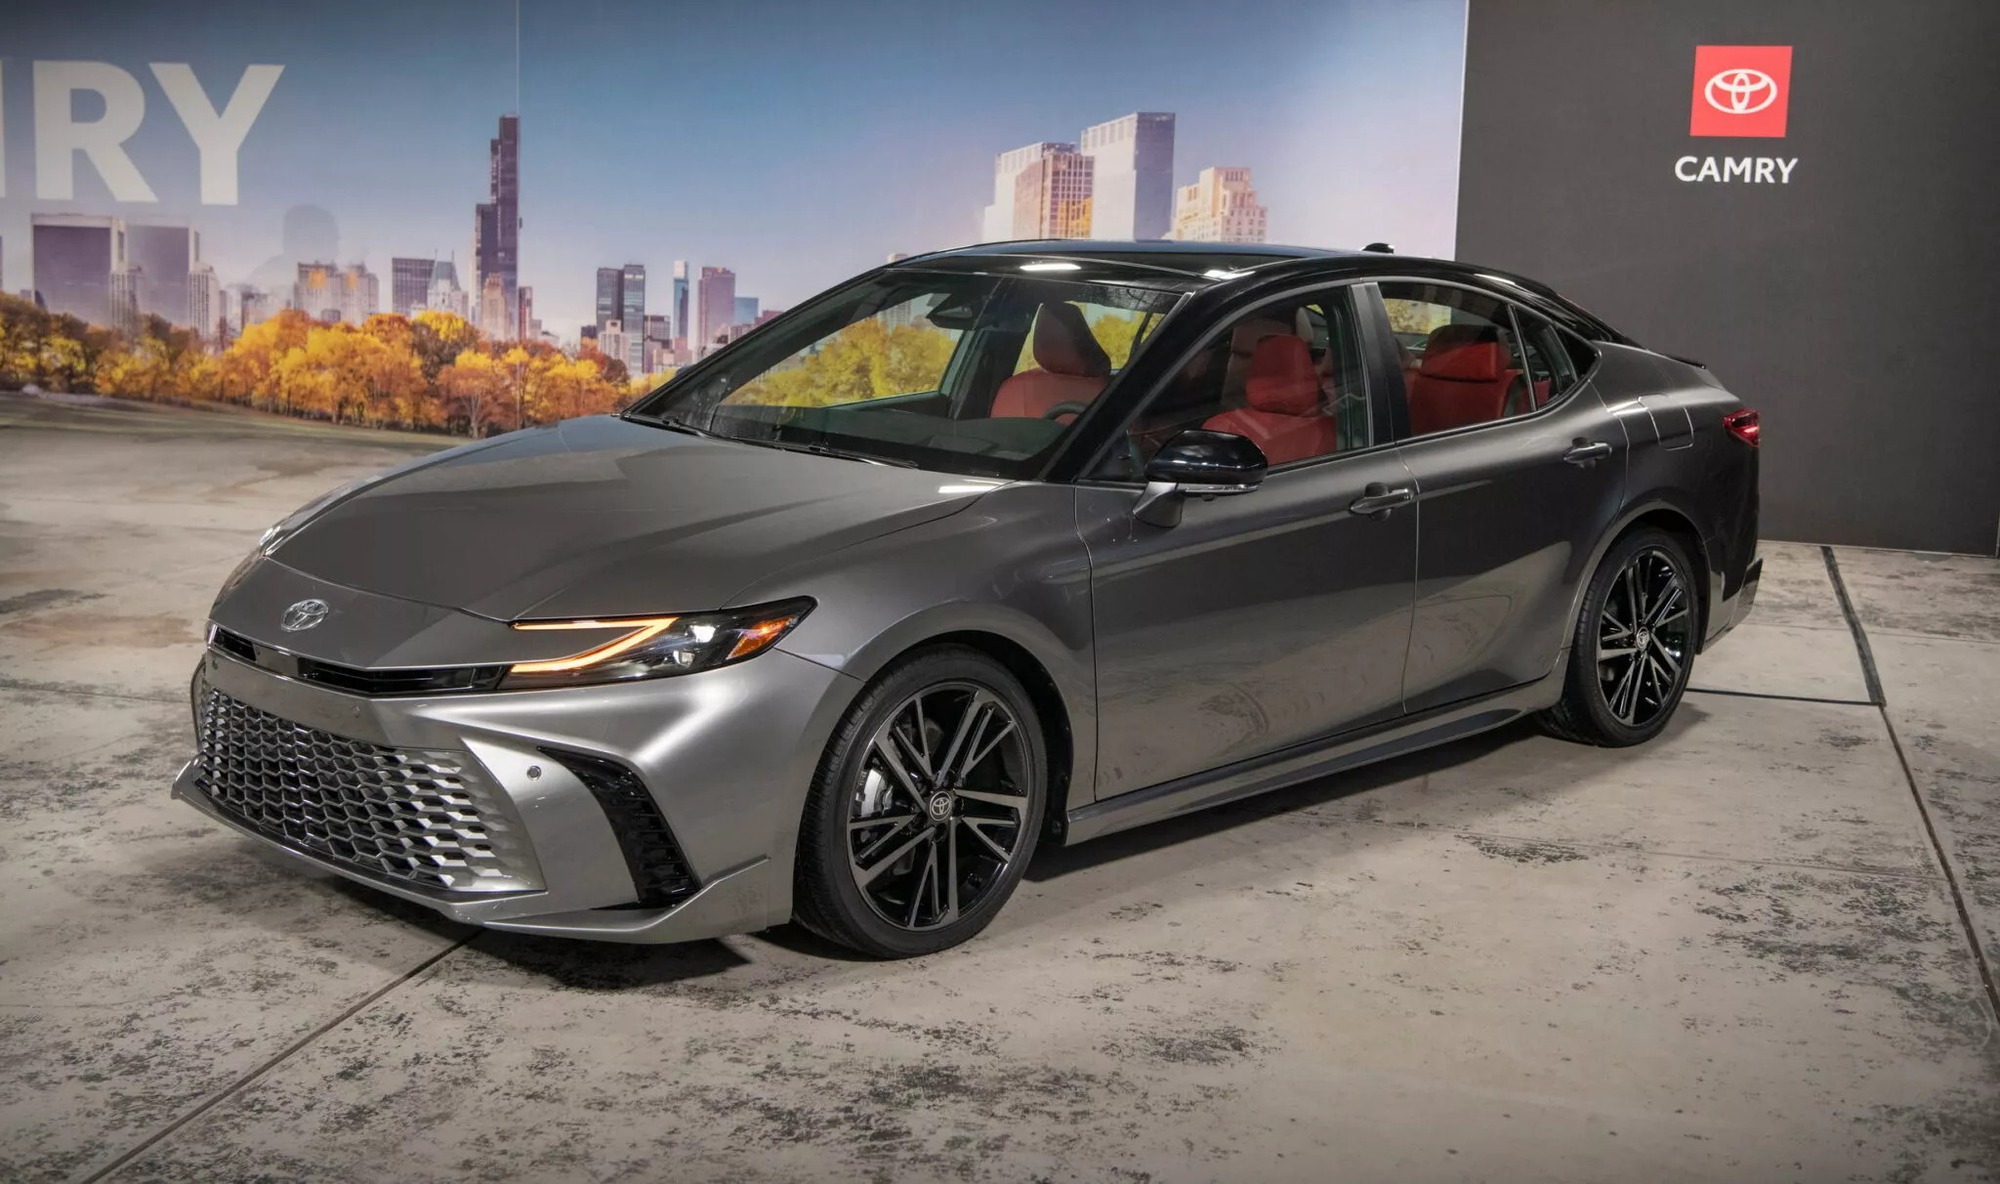 Toyota Camry 2025 ra mắt: Chỉ chạy hybrid, thiết kế nhiều điểm giống Crown, chờ ngày về Việt Nam